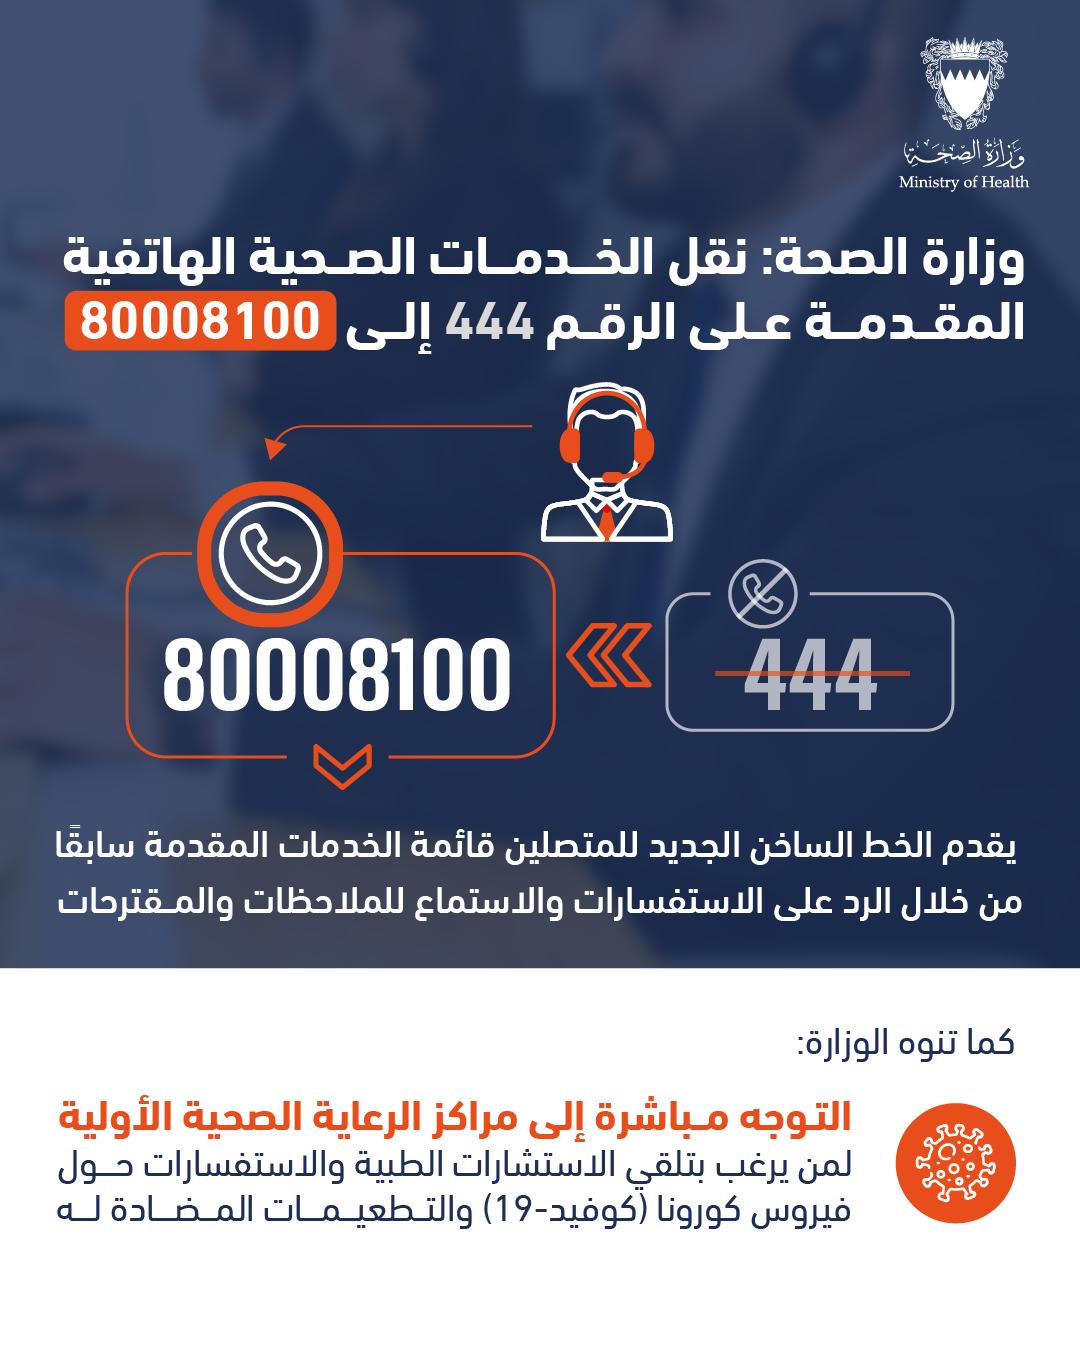 وزارة الصحة: نقل الخدمات الصحية الهاتفية المقدمة على الرقم 444 إلى 80008100